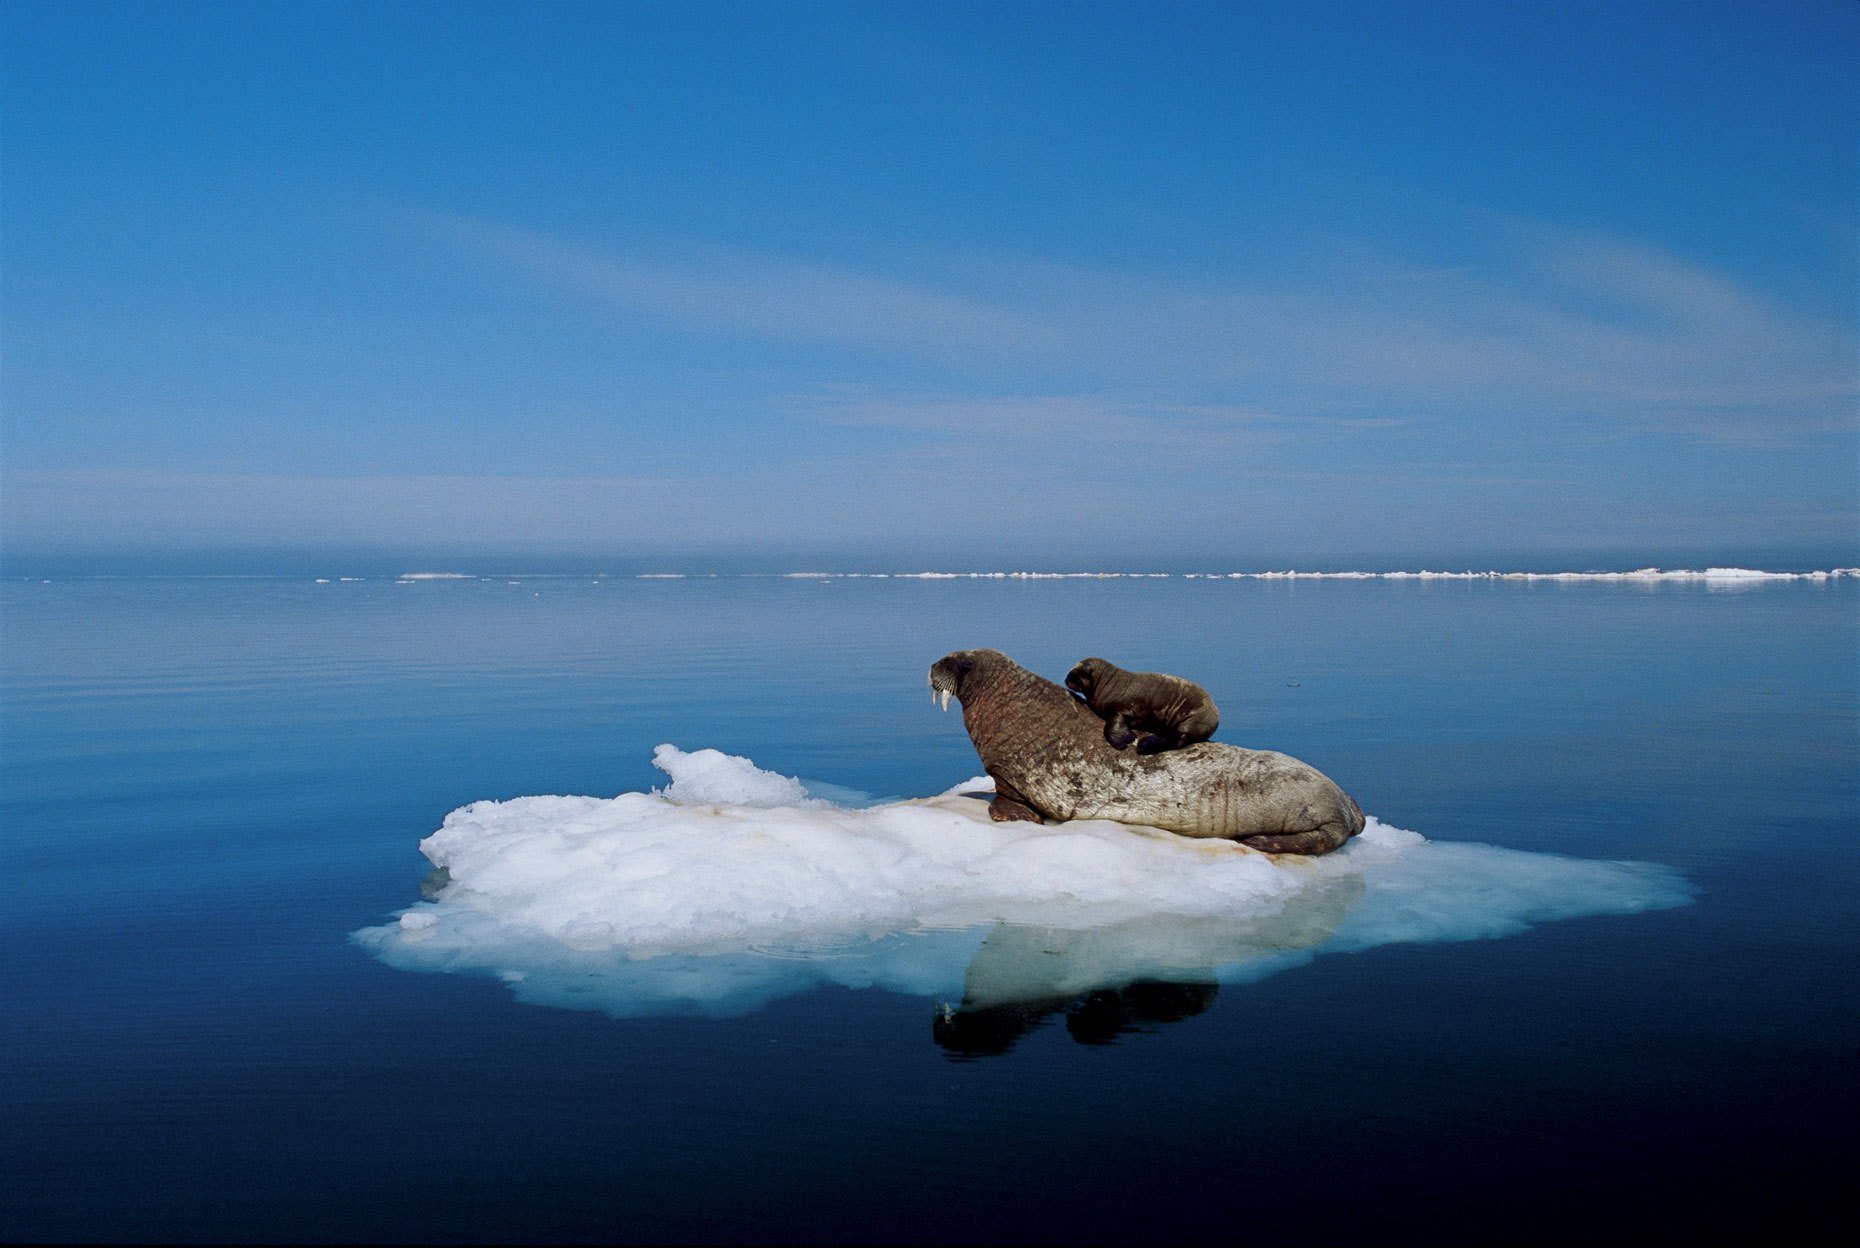 Про ледовитый океан. Арктика Северный Ледовитый океан. Пол Никлен Полярная одержимость. Пол Никлен фотограф. Севернолежовитый океан.